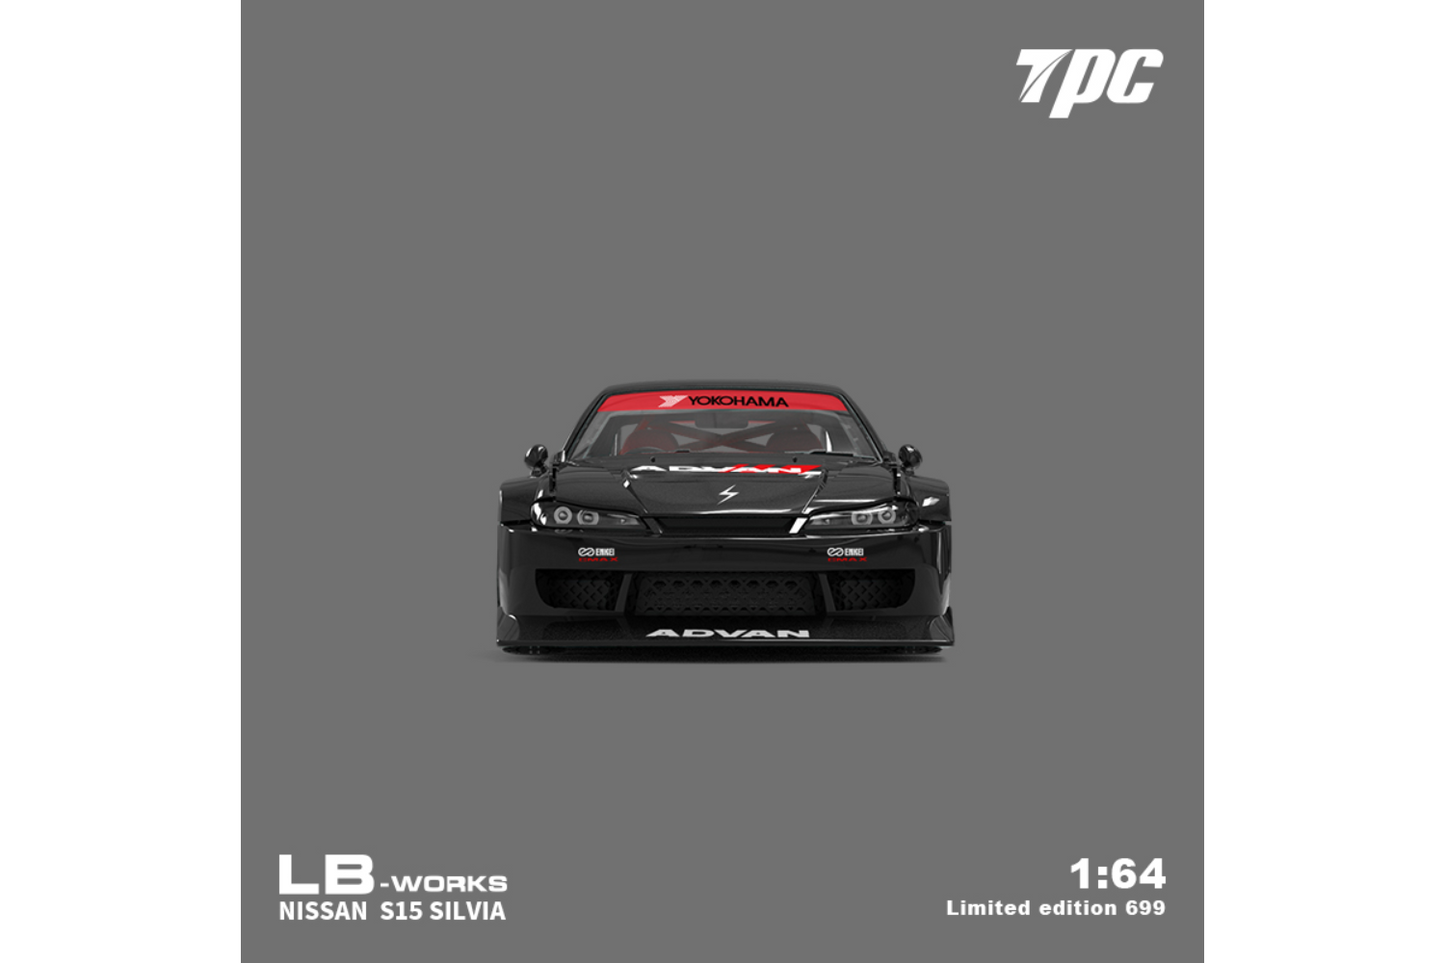 TPC 1/64 LB-Super Silhouette Nissan Silvia S15 in Advan Livery